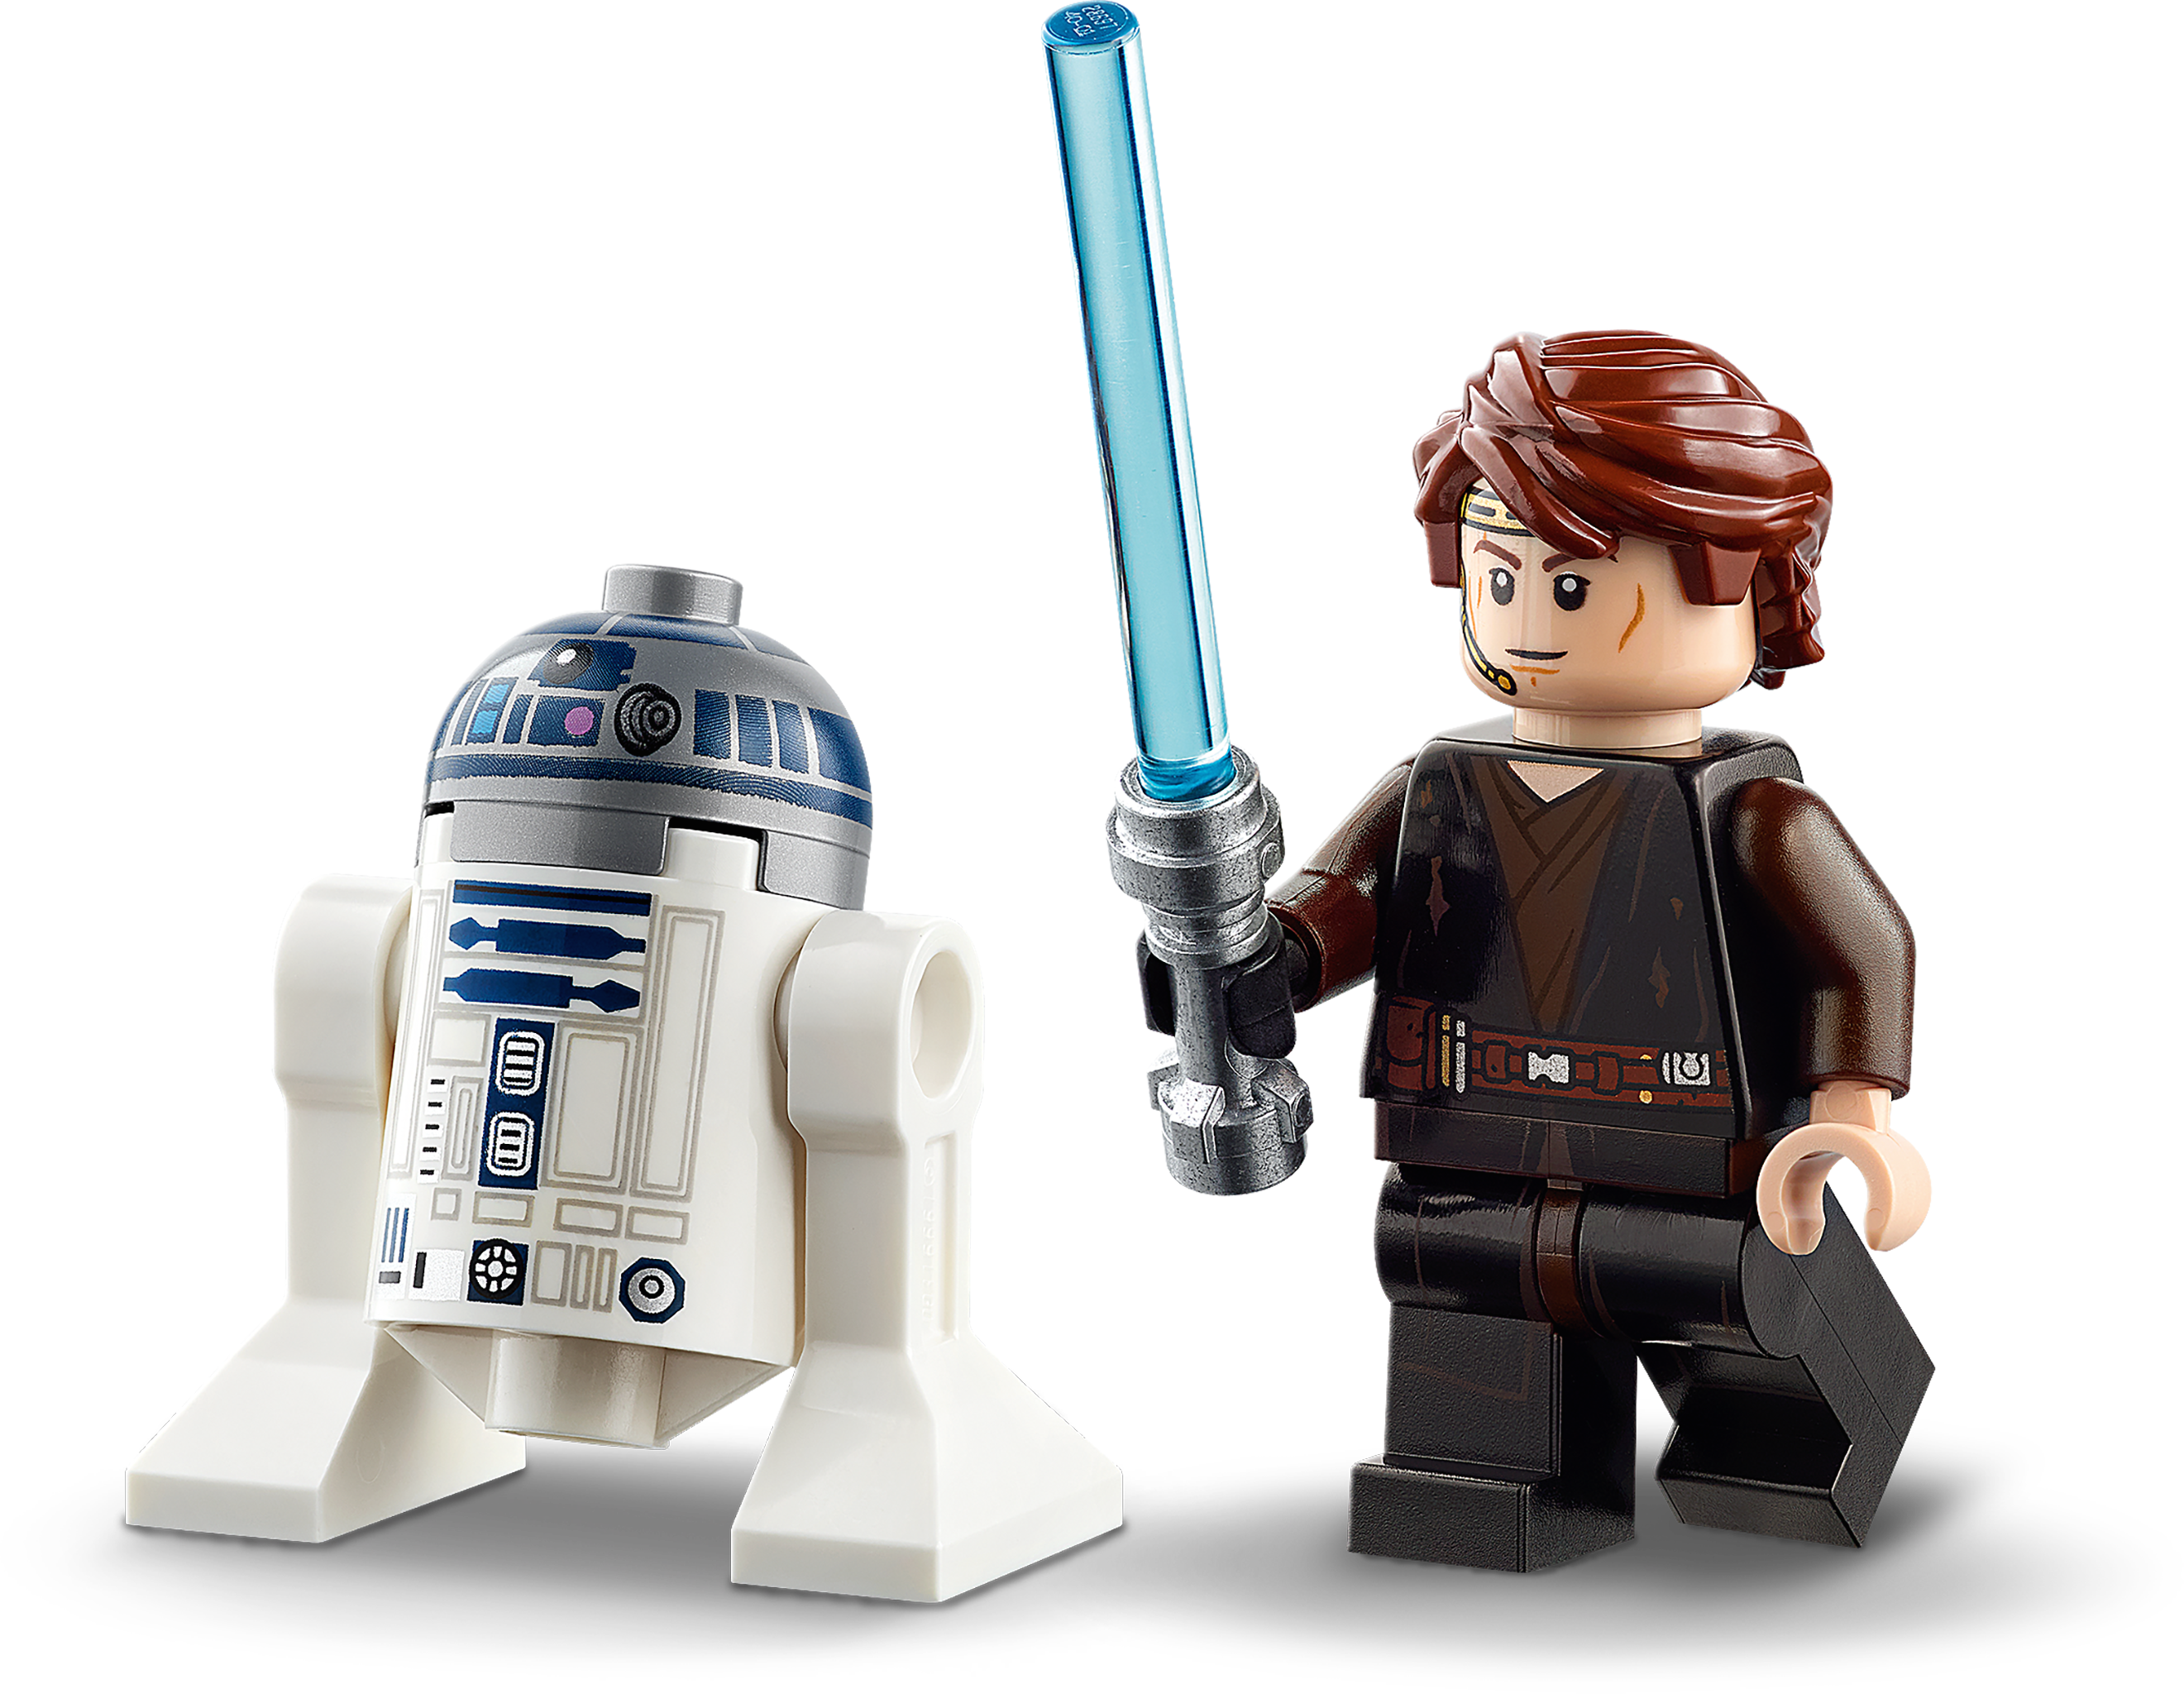 Download PNG image - Lego Star Wars PNG Transparent Image 